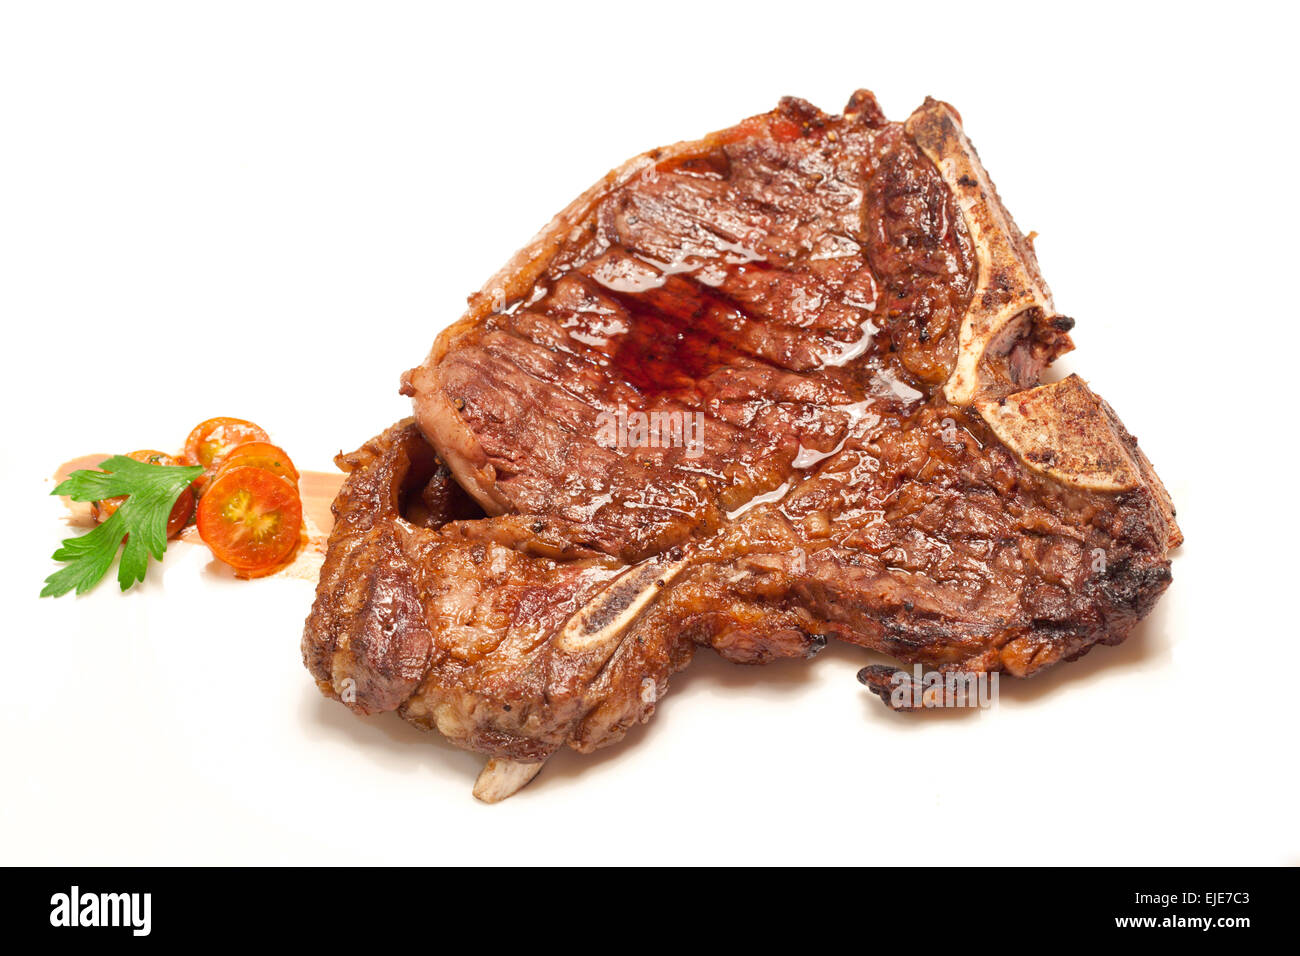 Gourmet-Vorspeise Hauptgang t-Bone Rindfleisch gegrilltes Steak auf weiße Schale Stockfoto